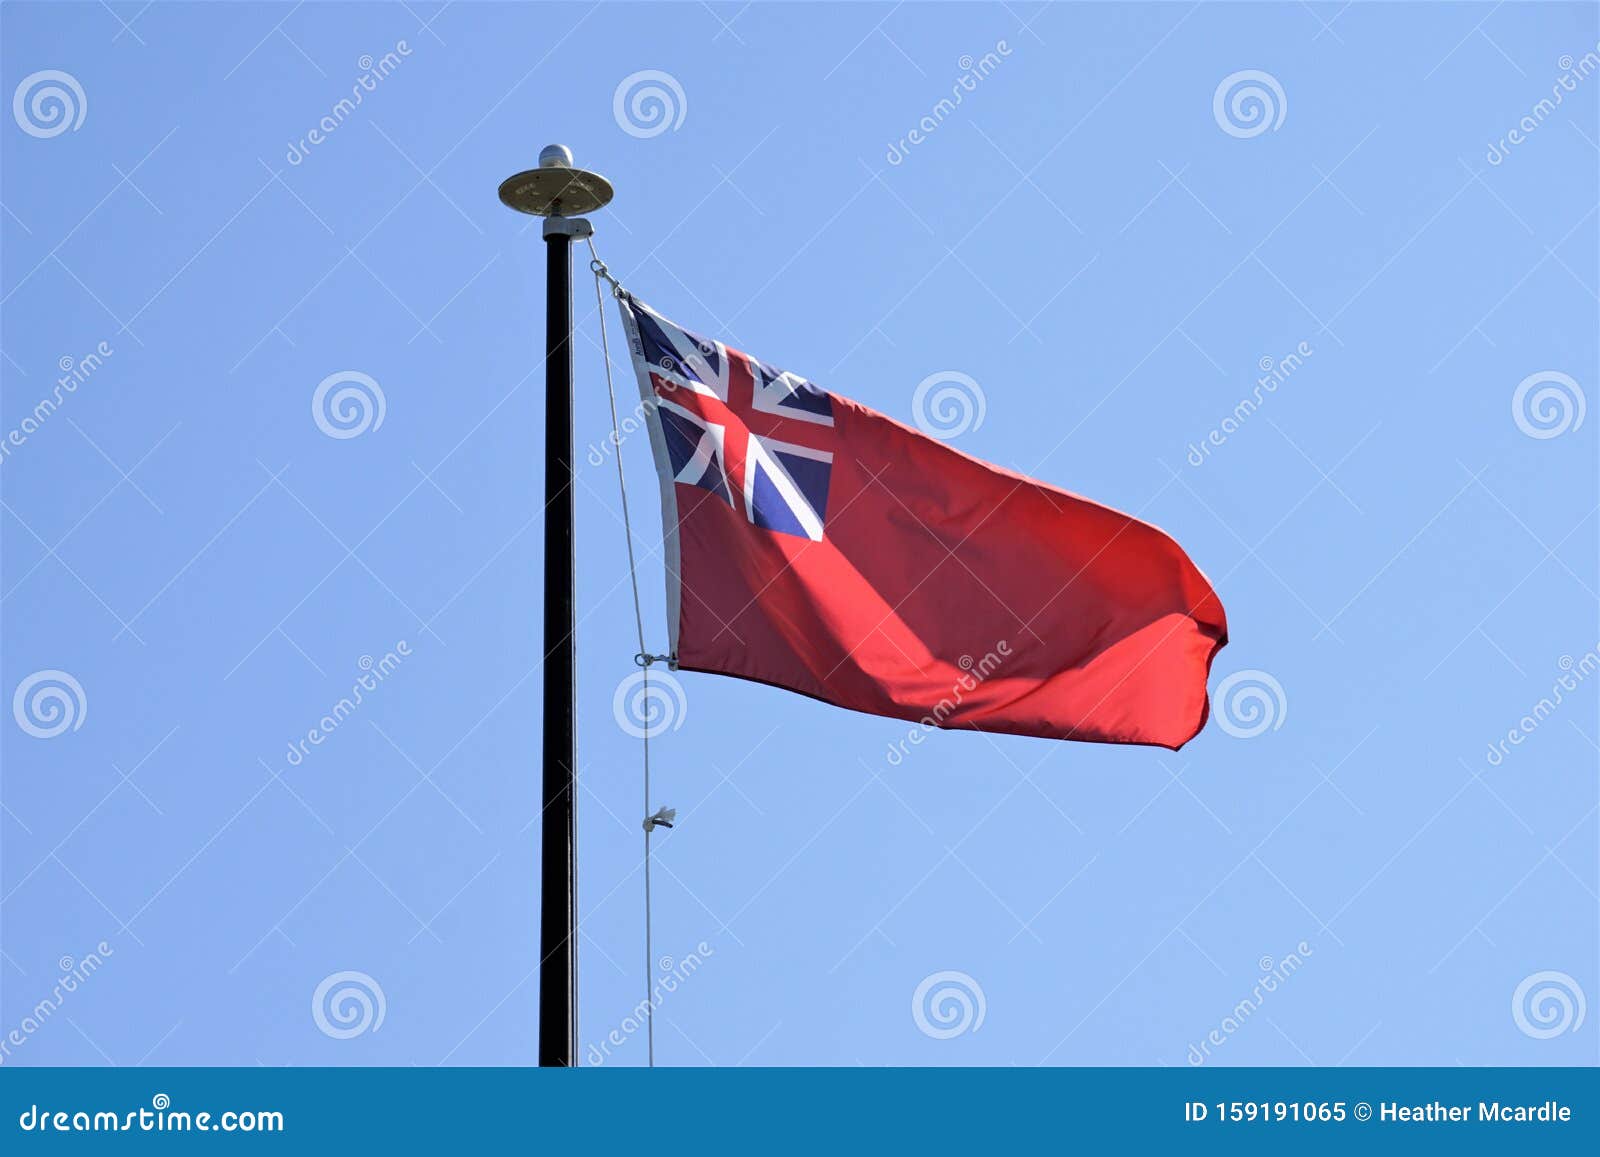 Historical Red Duster Ensign Flag - Hình ảnh lá cờ Historical Red Duster Ensign Flag đã từng gây sóng gió trong quá khứ sẽ khiến bạn hiểu rõ hơn về lịch sử đất nước. Hãy cùng tìm hiểu về những tính năng và ý nghĩa của chiếc cờ này thông qua hình ảnh chân thực và sắc nét.